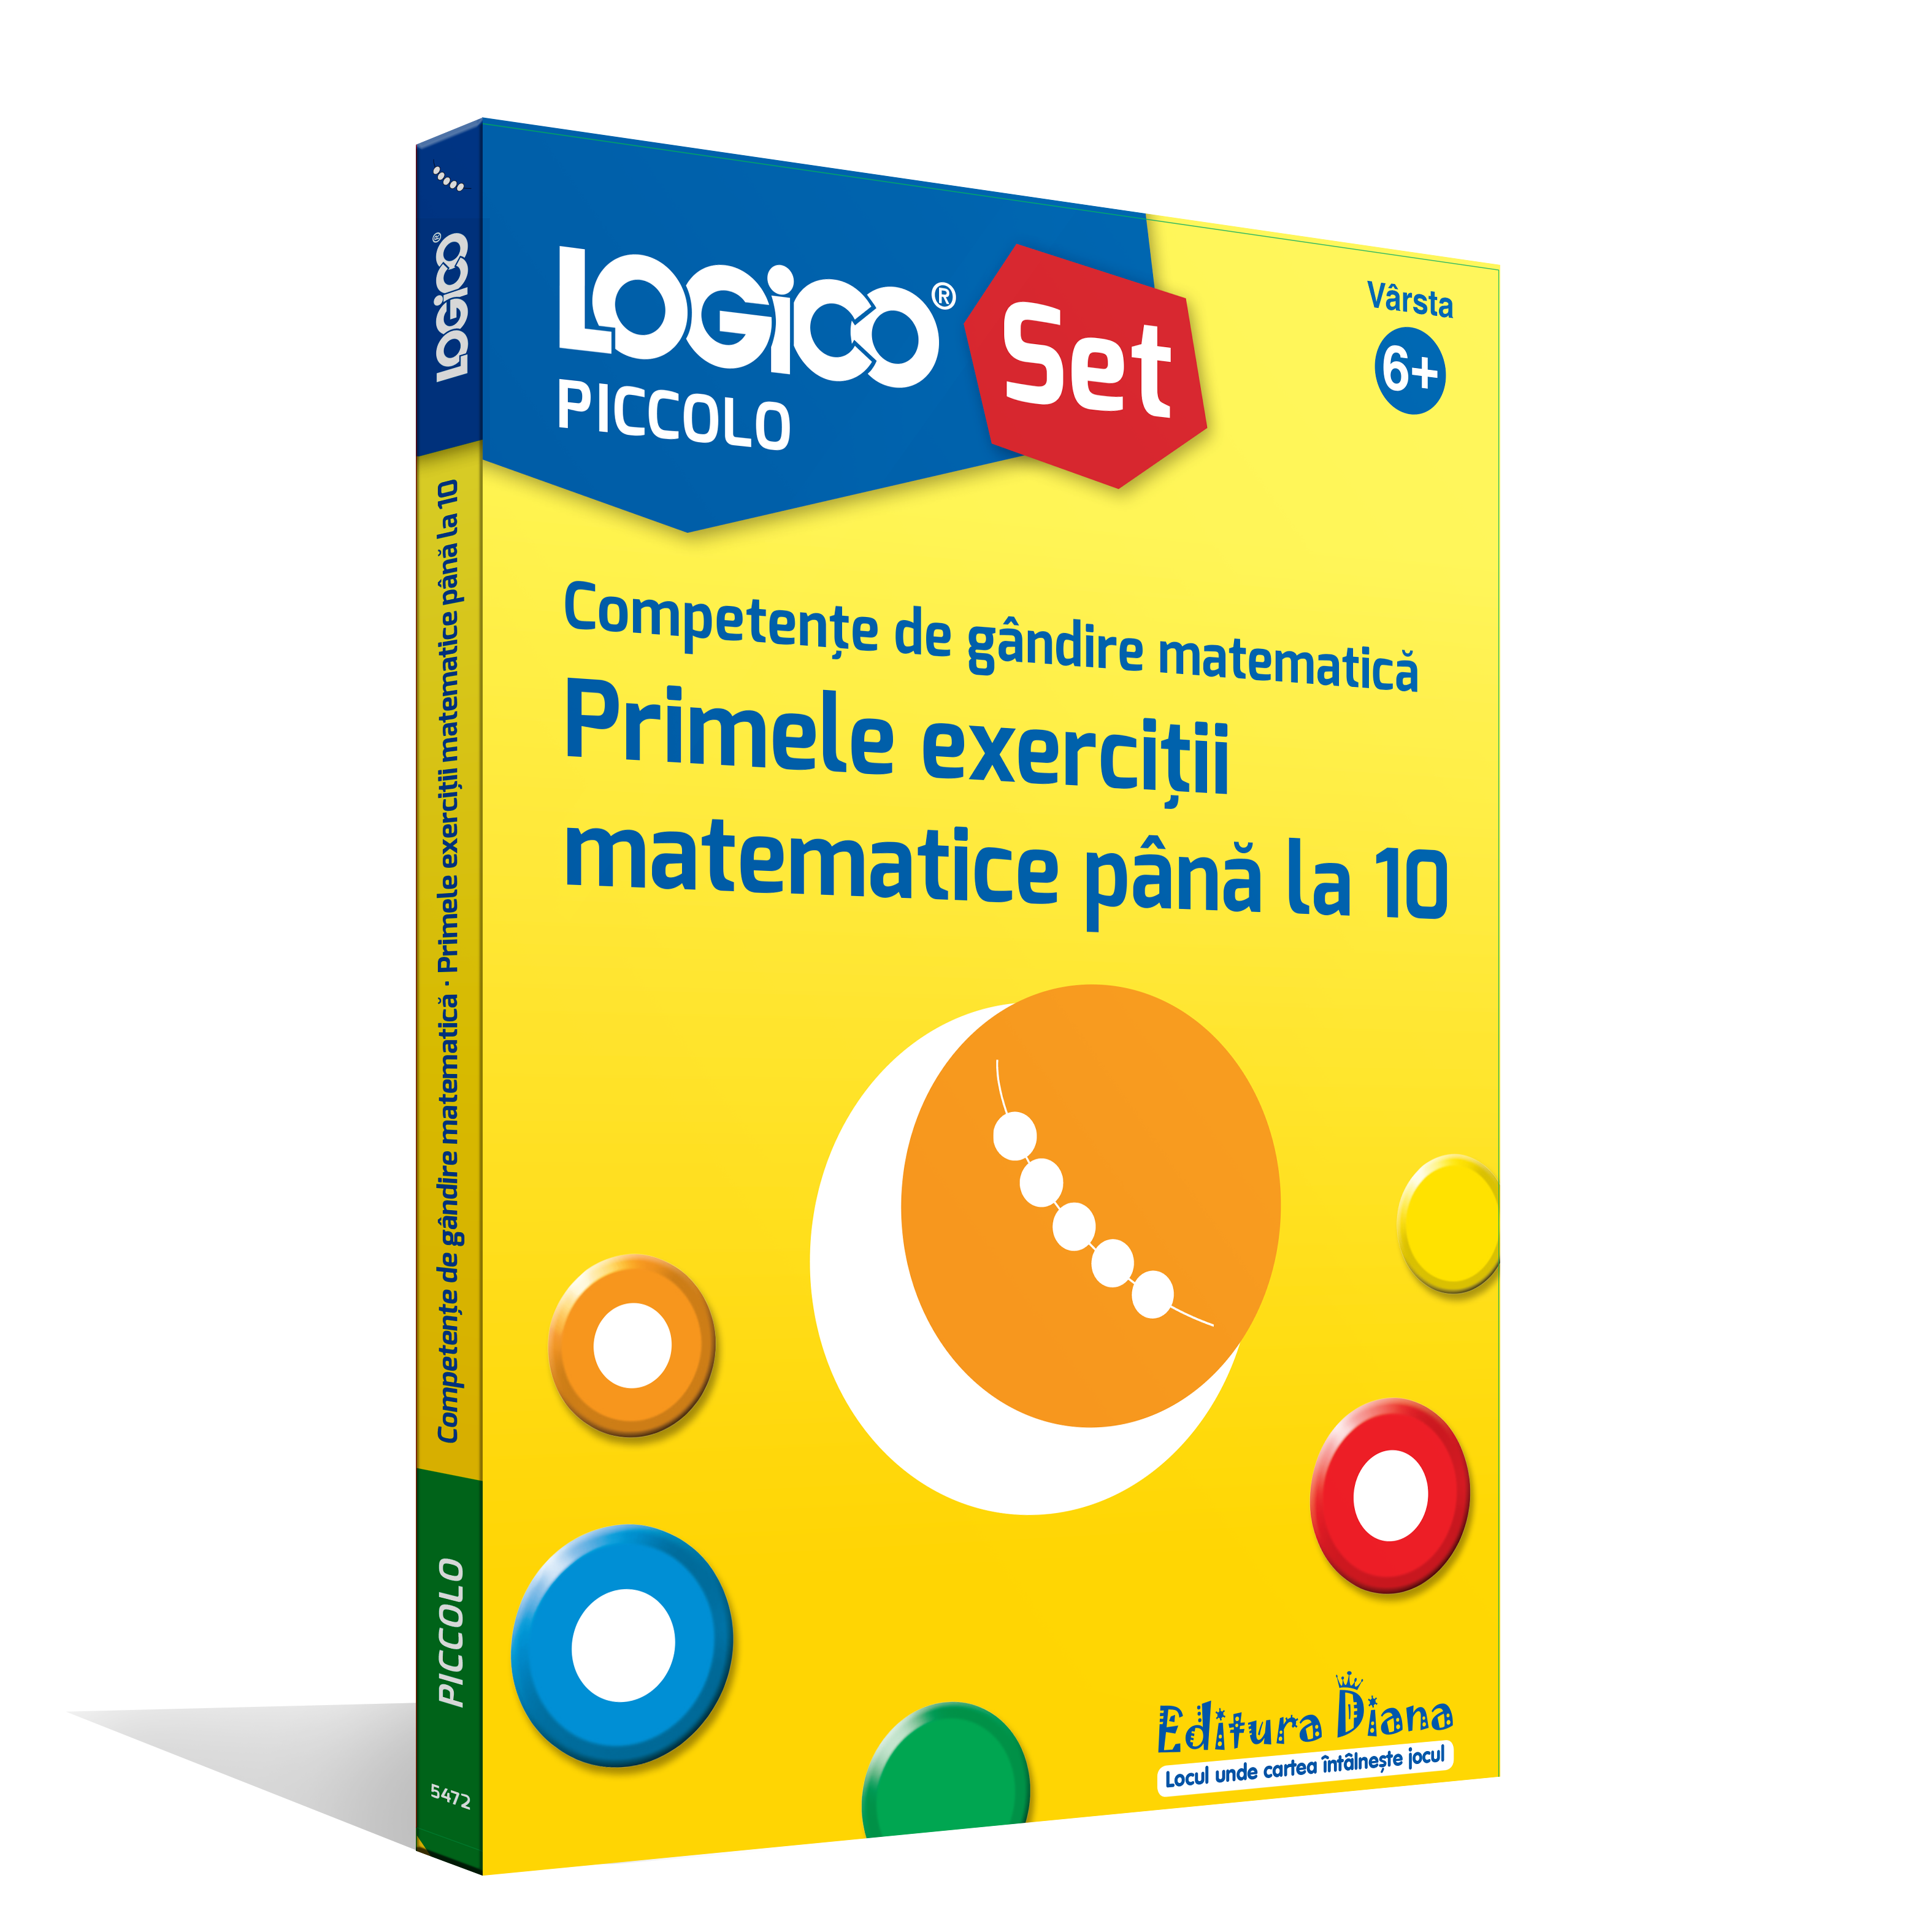 LOGICO PICCOLO - Competențe de gândire matematică. Primele exerciții matematice până la 10 (6+)